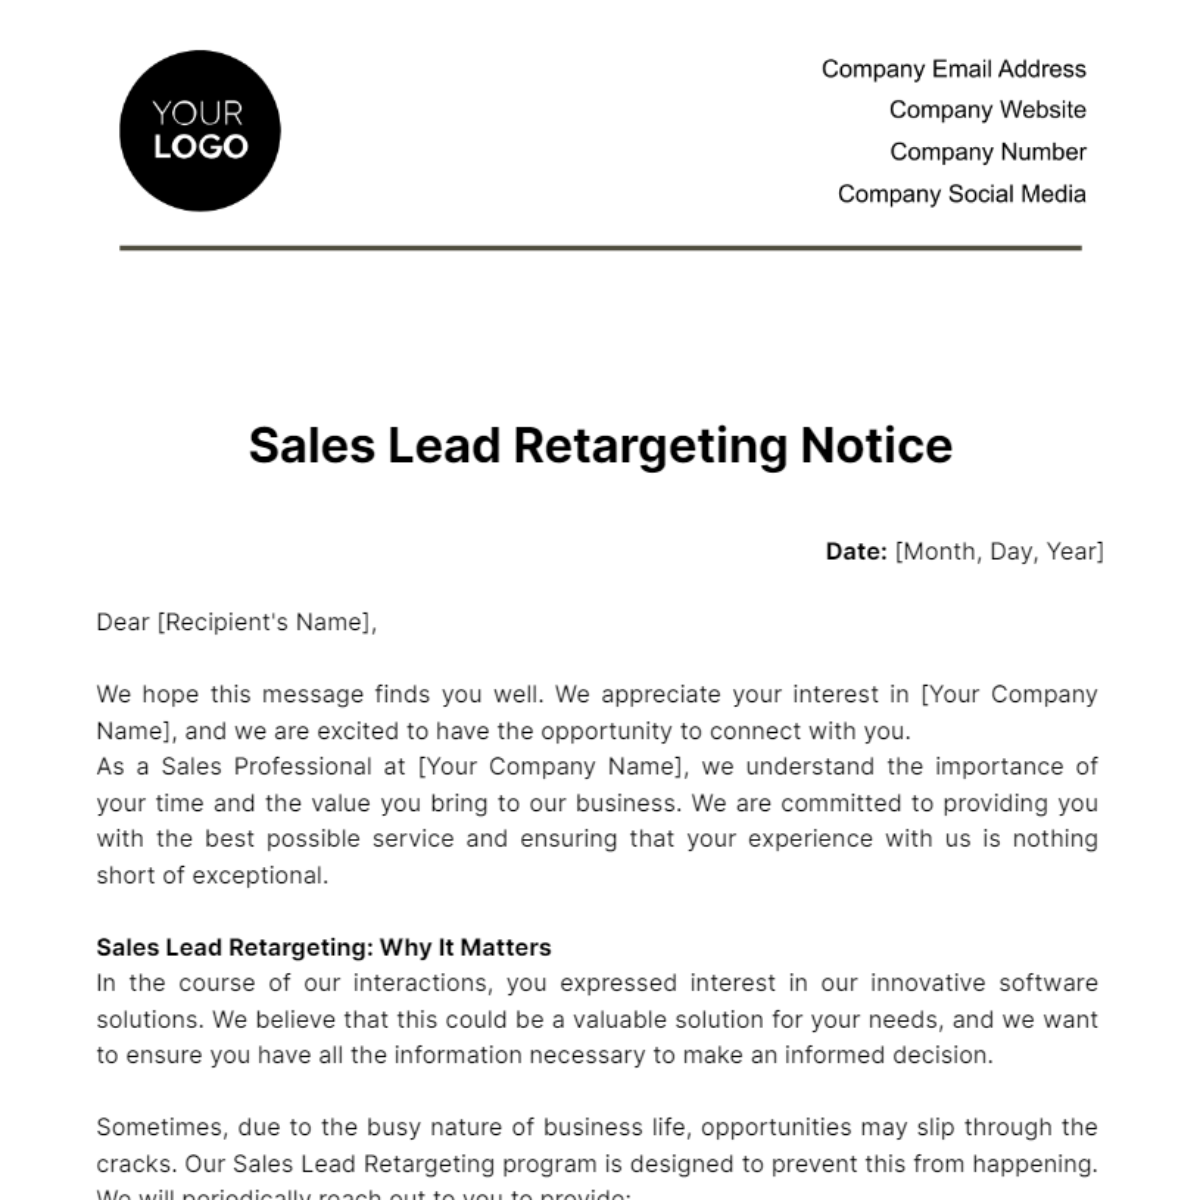 Sales Lead Retargeting Notice Template